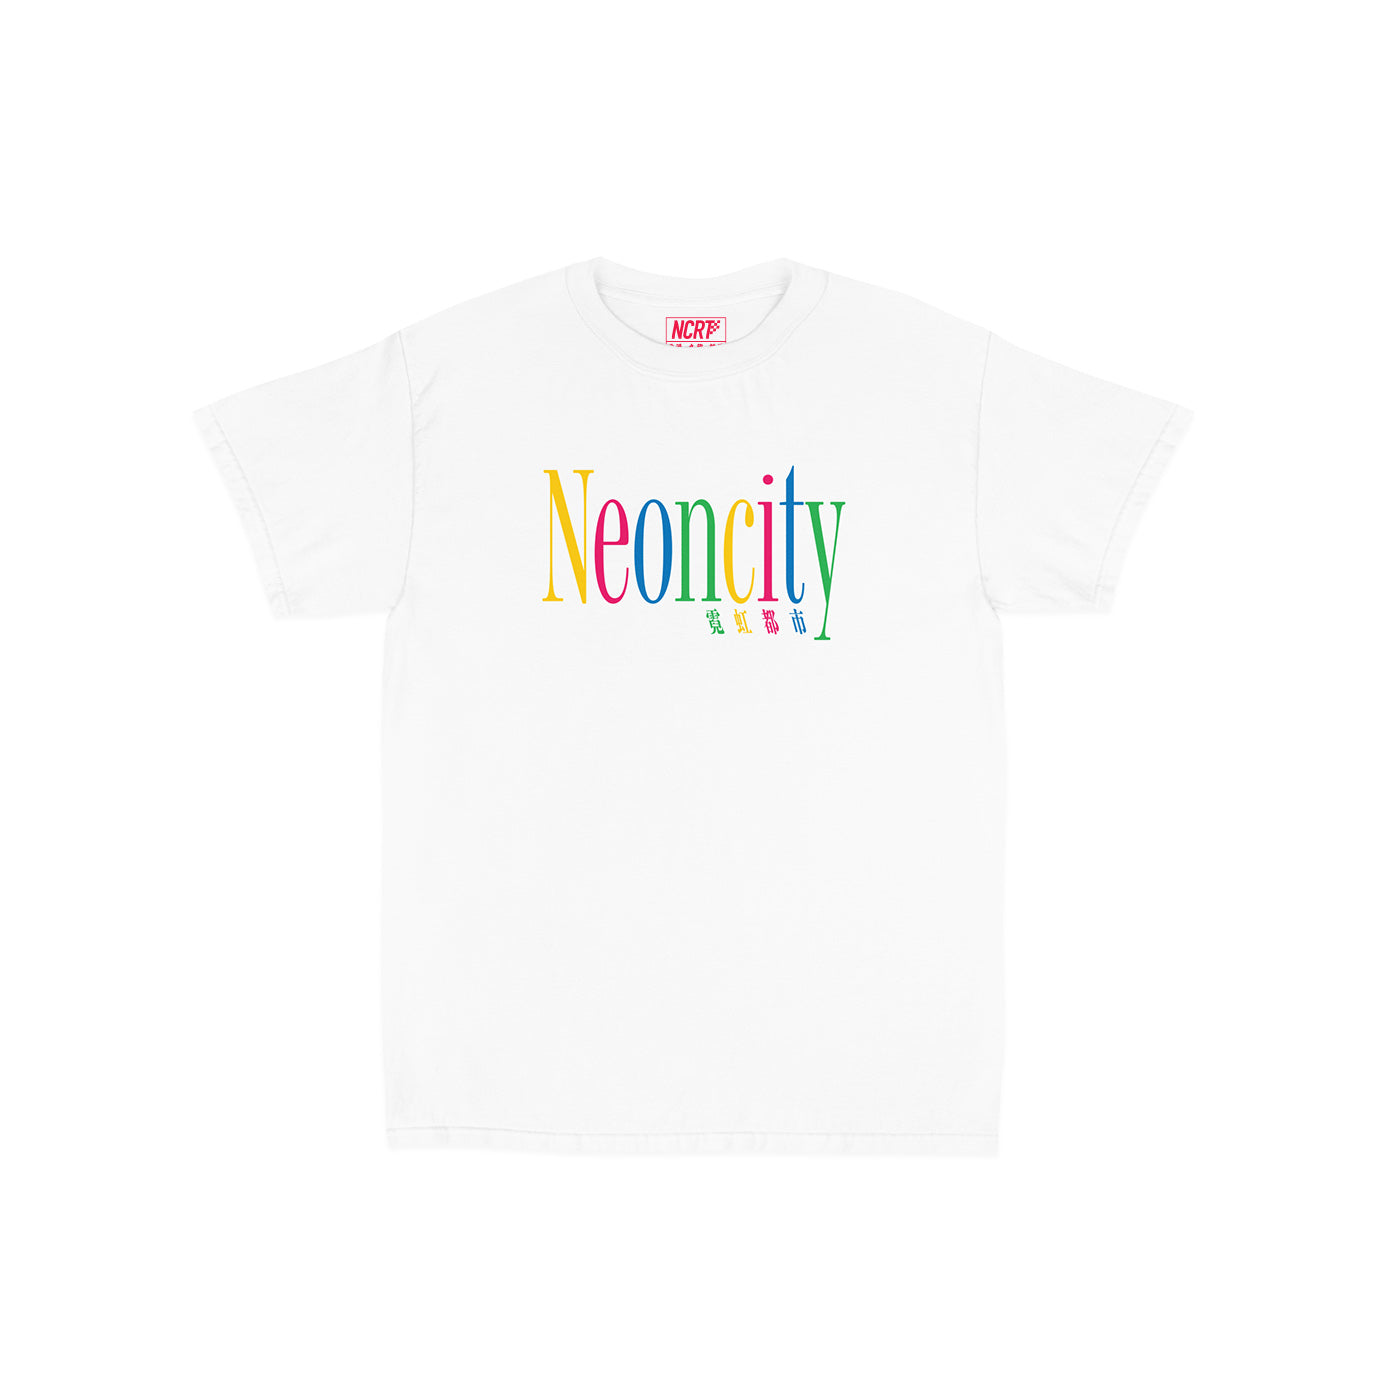 Neoncity 1992 T-Shirt (White) - NCRT | Neoncity Racing Team